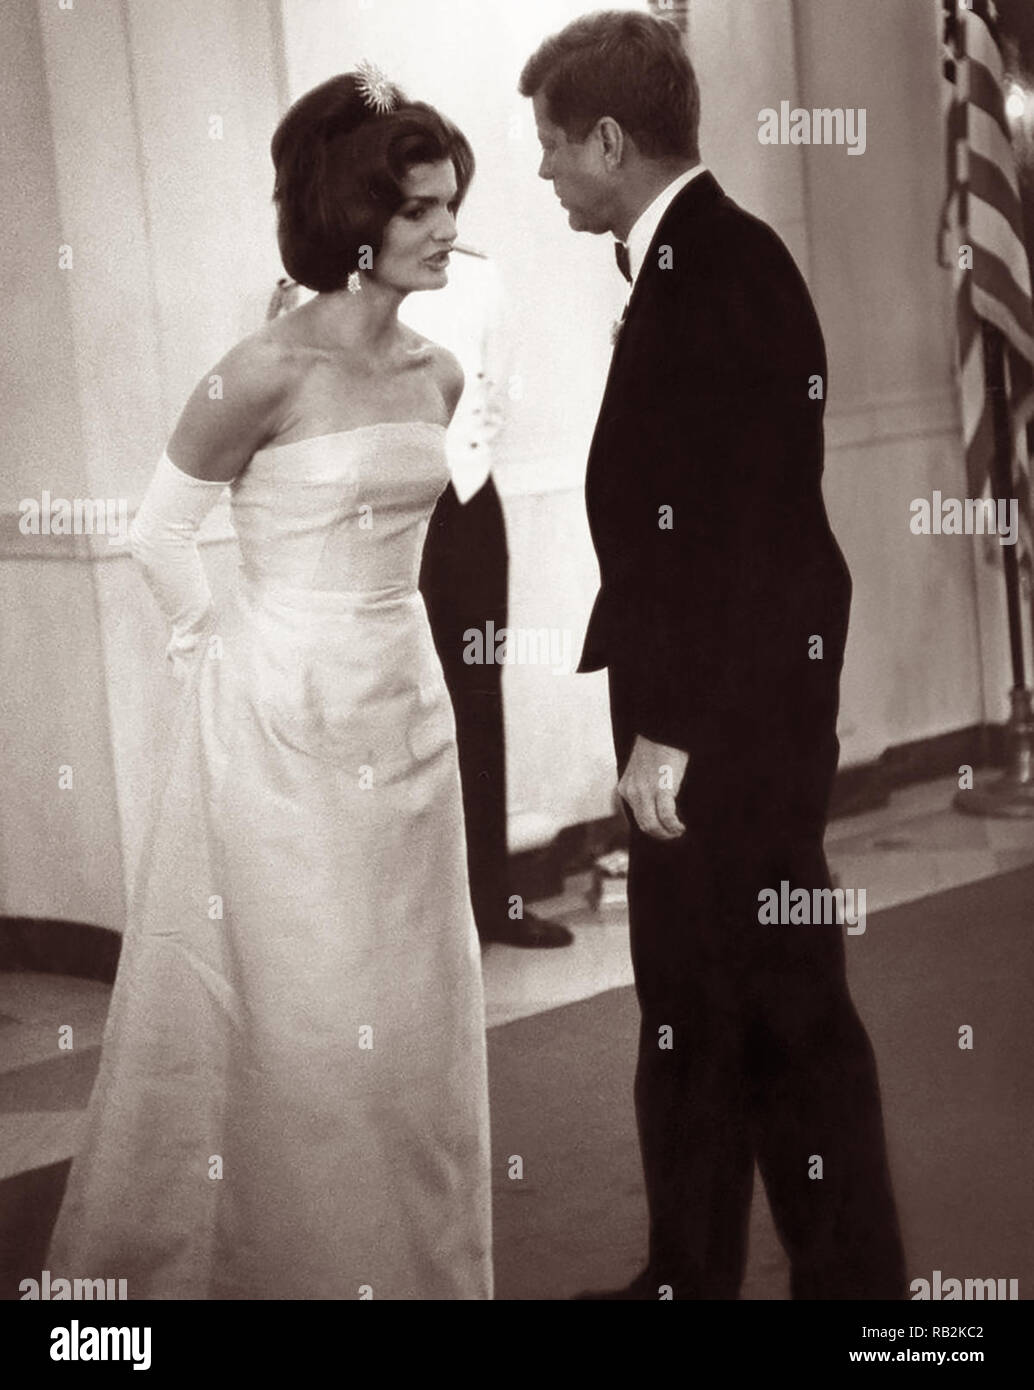 Le président des États-Unis John F. Kennedy et de la Première Dame Jacqueline Kennedy à la Maison Blanche un dîner en l'honneur d'André Malraux, Ministre d'État aux Affaires culturelles de la France. Banque D'Images